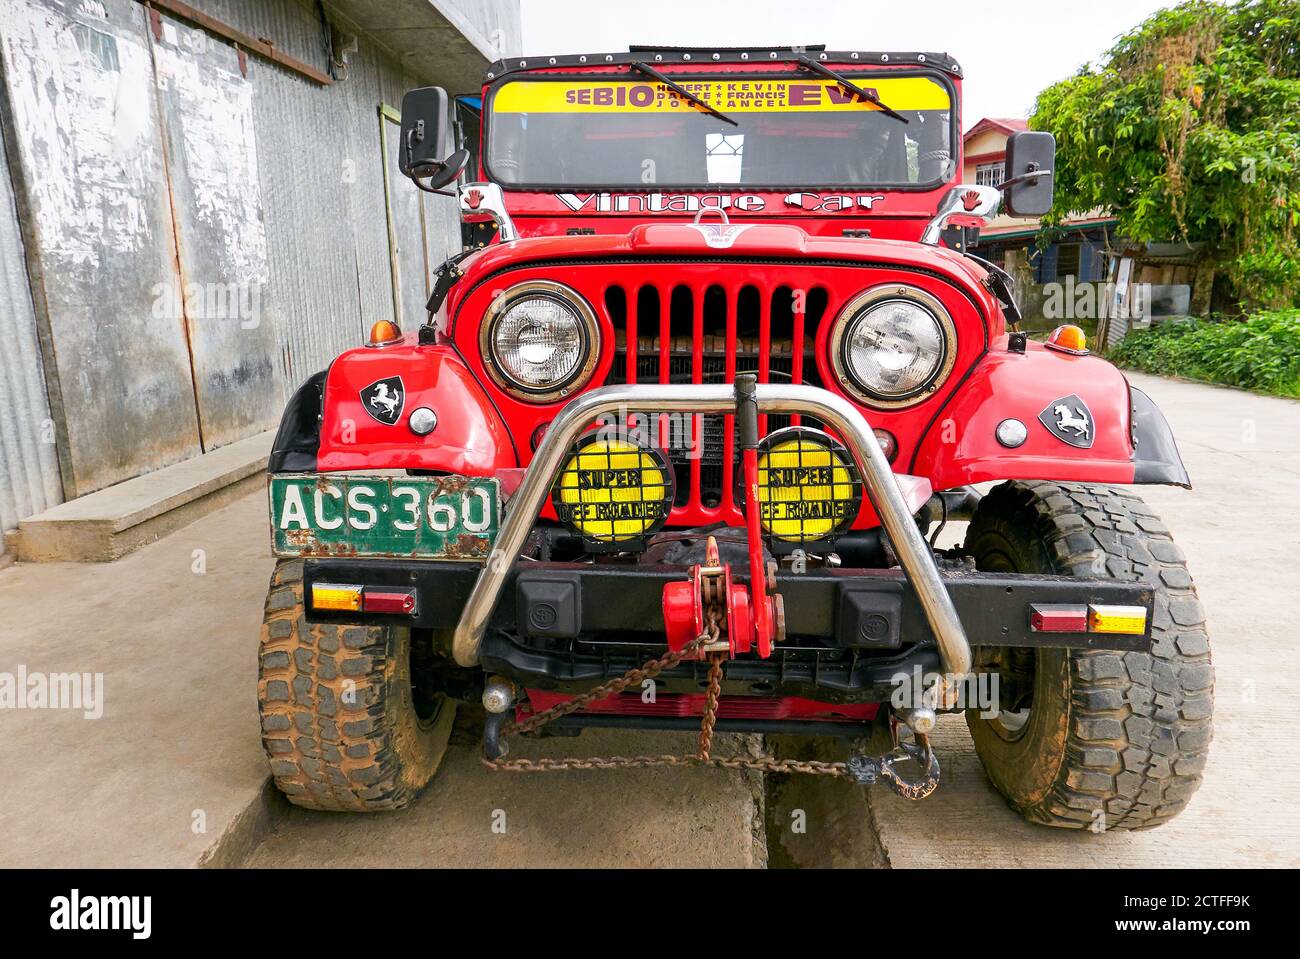 Vista frontale ravvicinata di un'auto fuoristrada a 4 ruote motrici in stile jeep di colore rosso con ruote, paraurti e fari molto grandi, vista a Sagada, Filippine Foto Stock